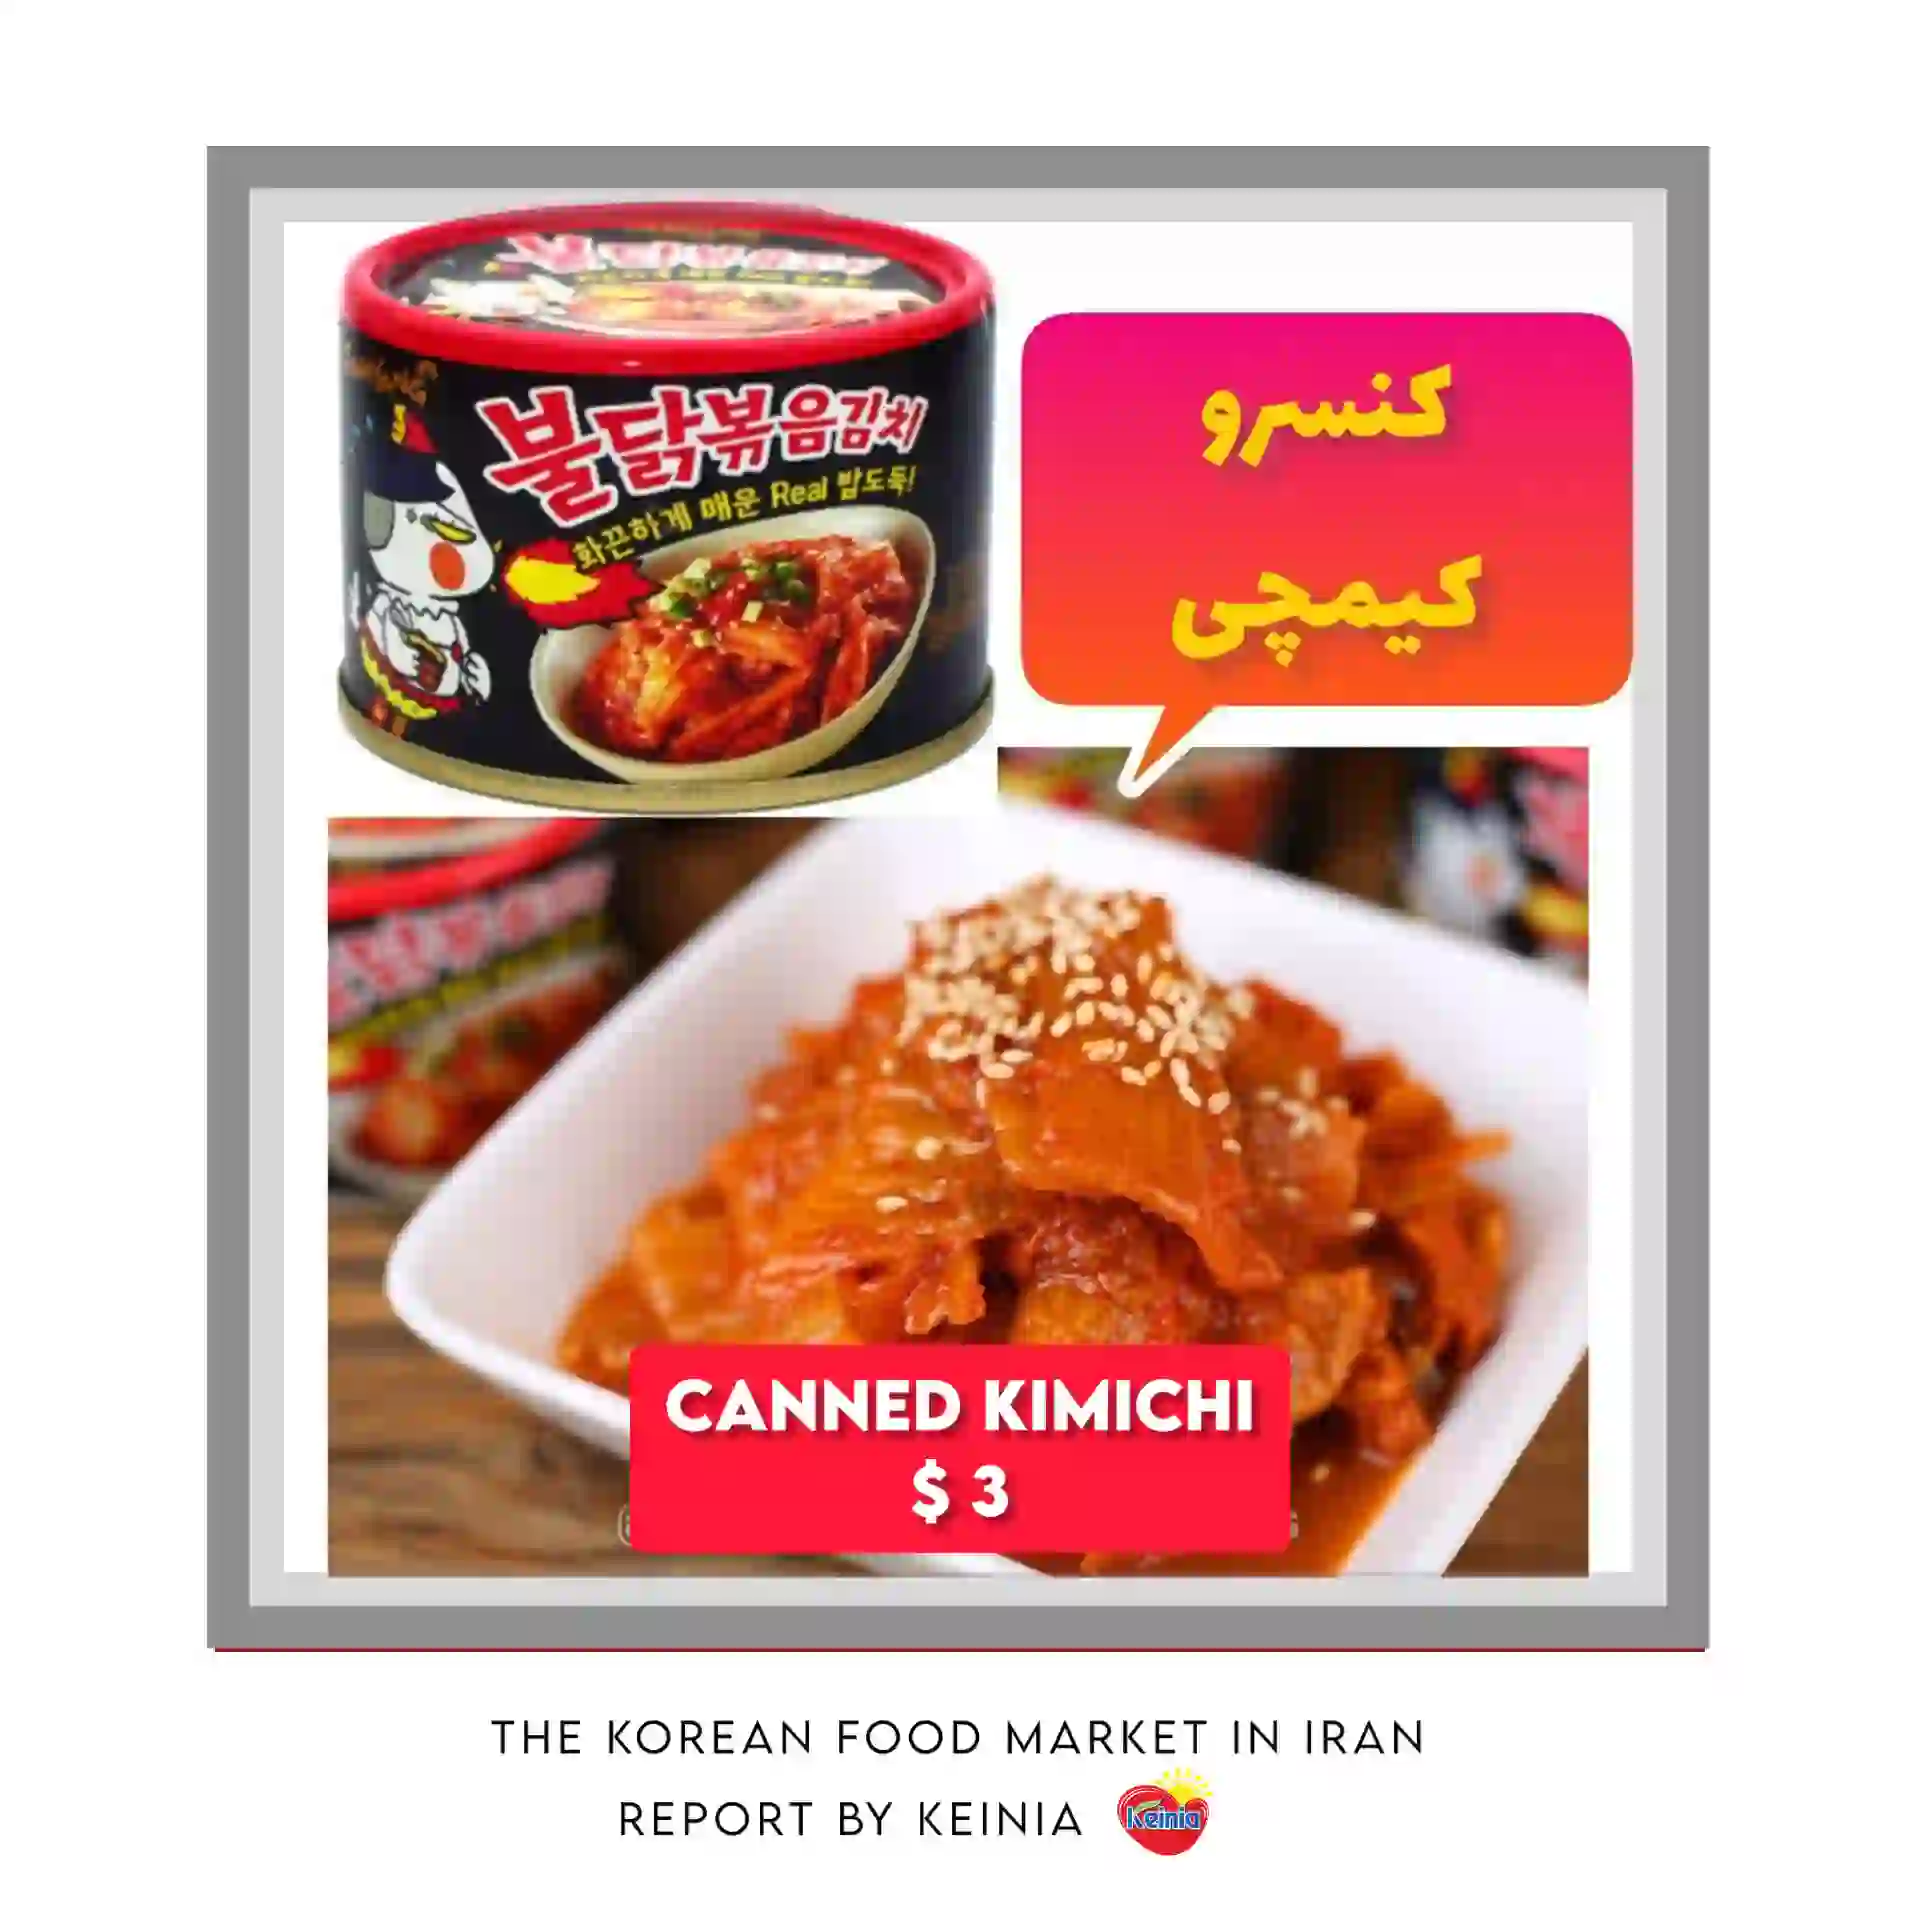 Canned Kimichi in Iran